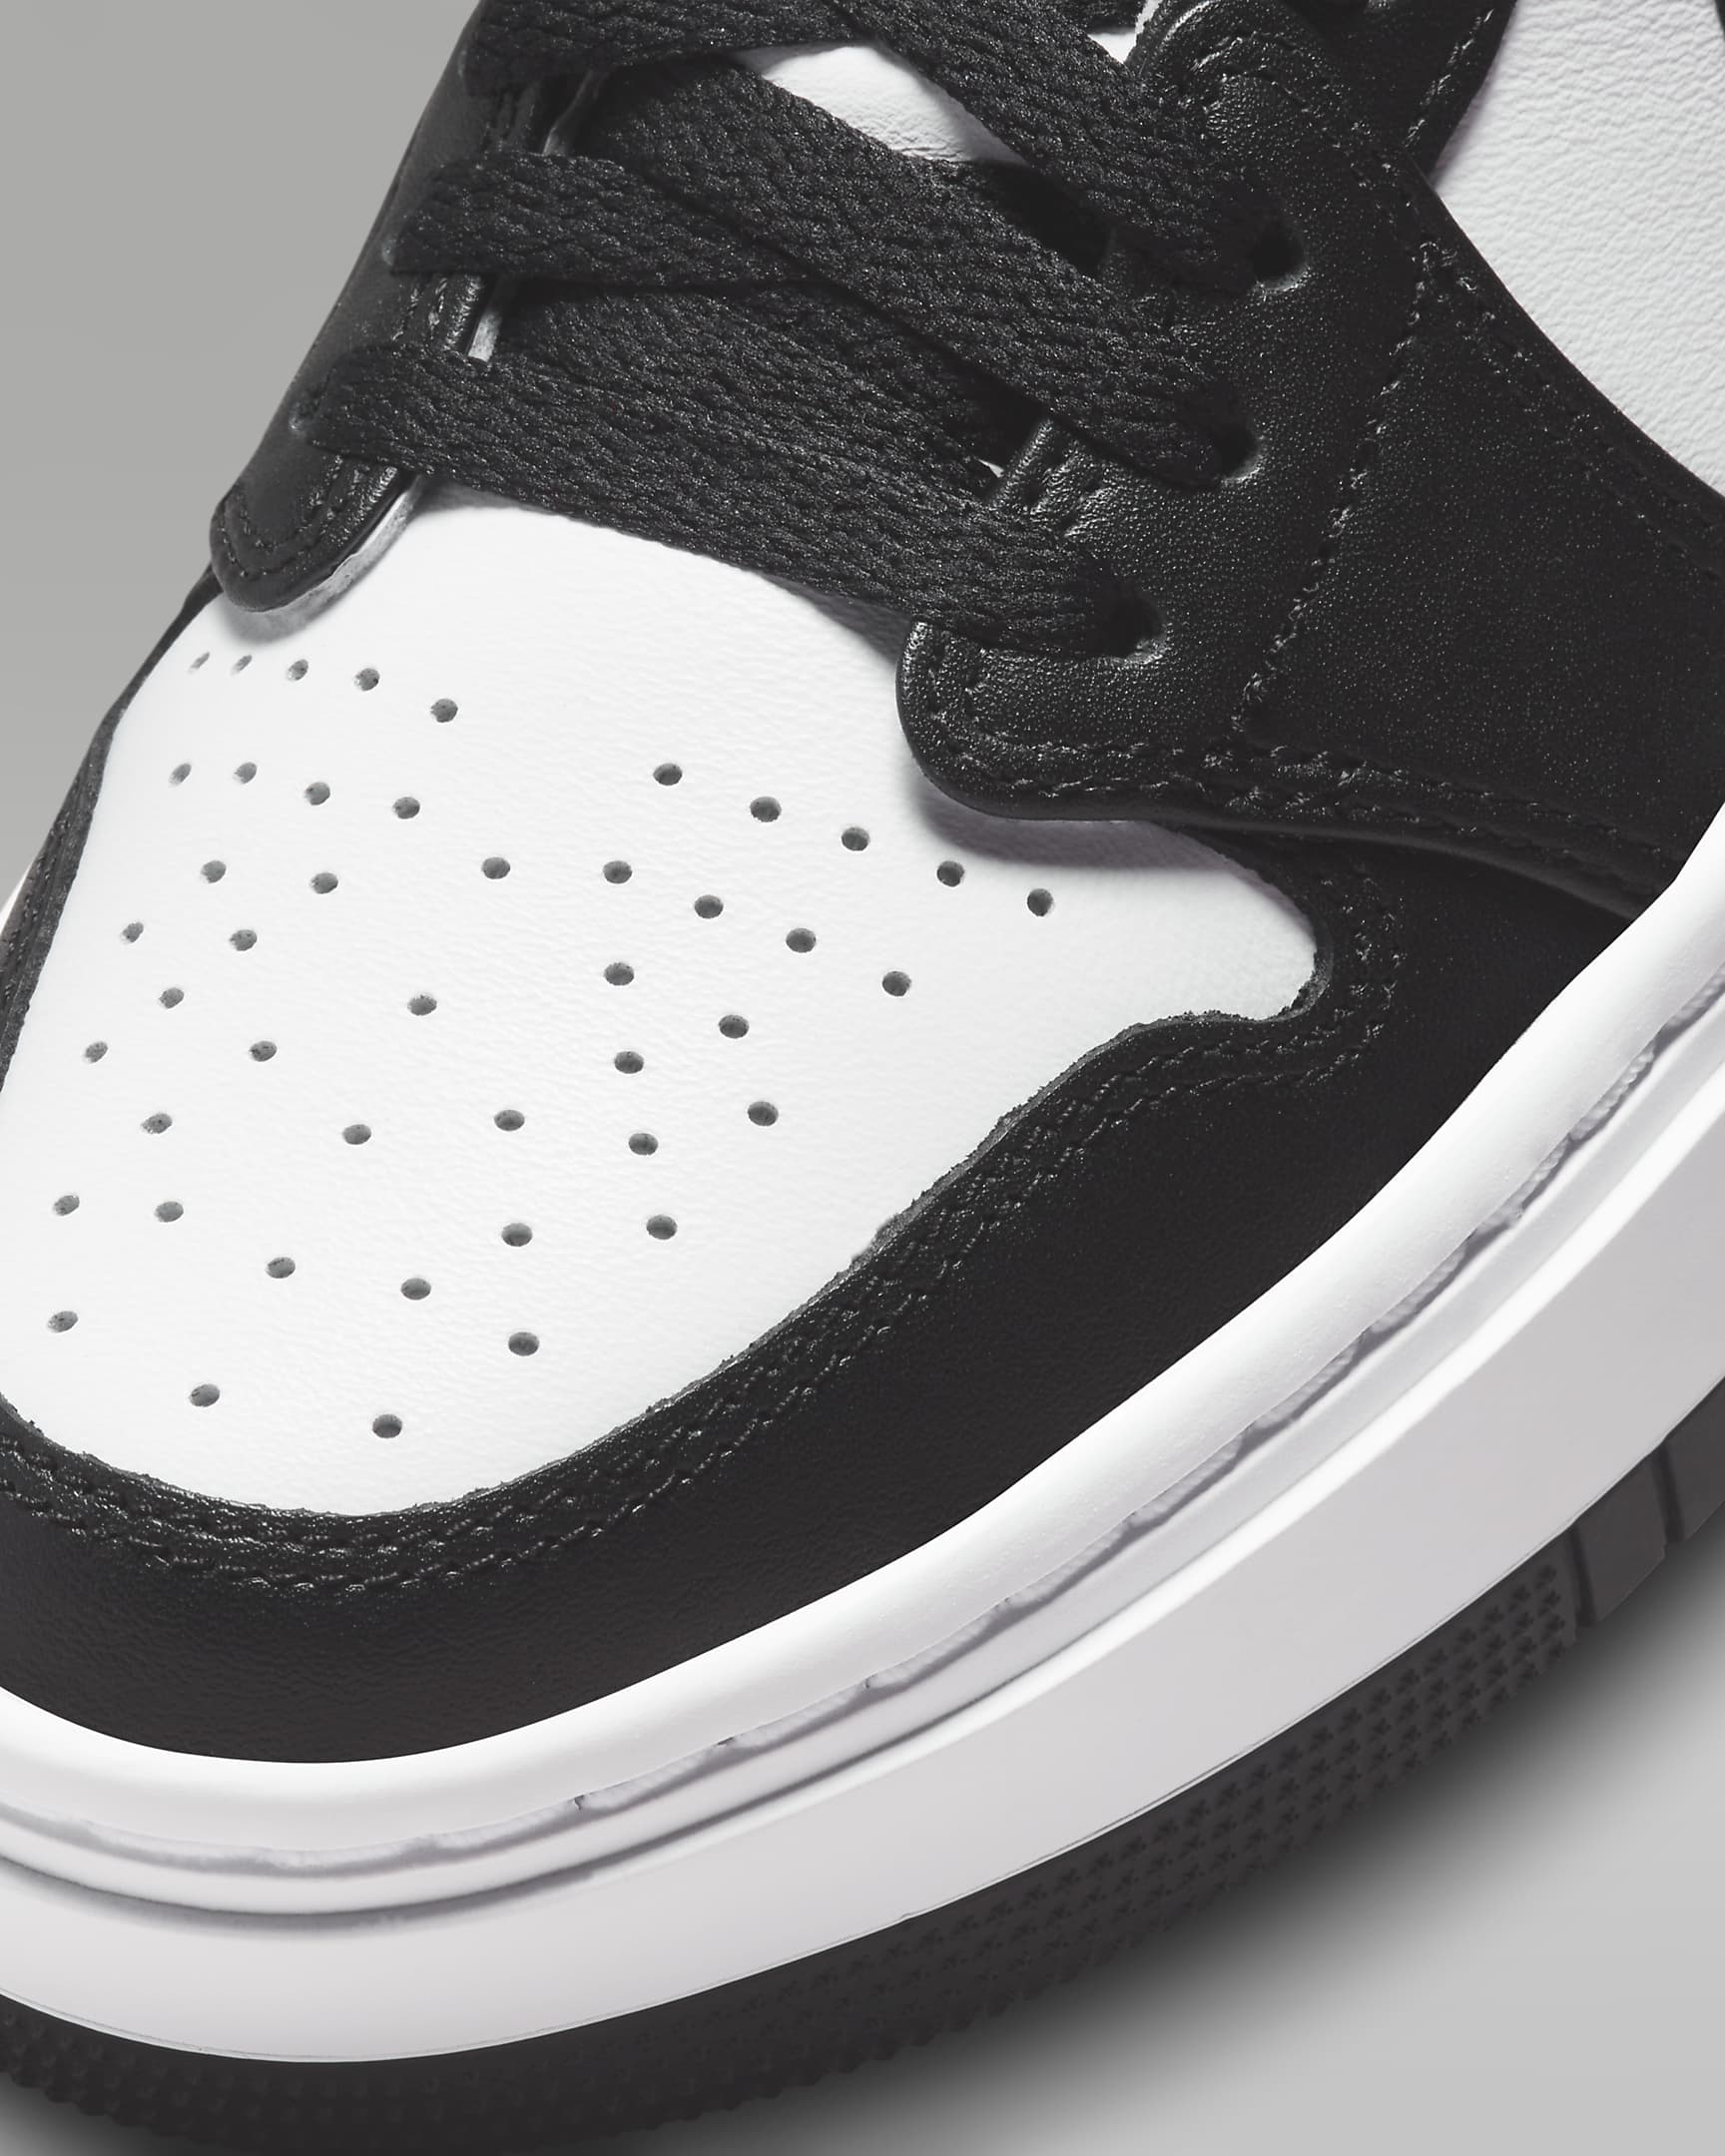 Chaussure Air Jordan 1 Elevate Low pour Femme - Blanc/Blanc/Noir